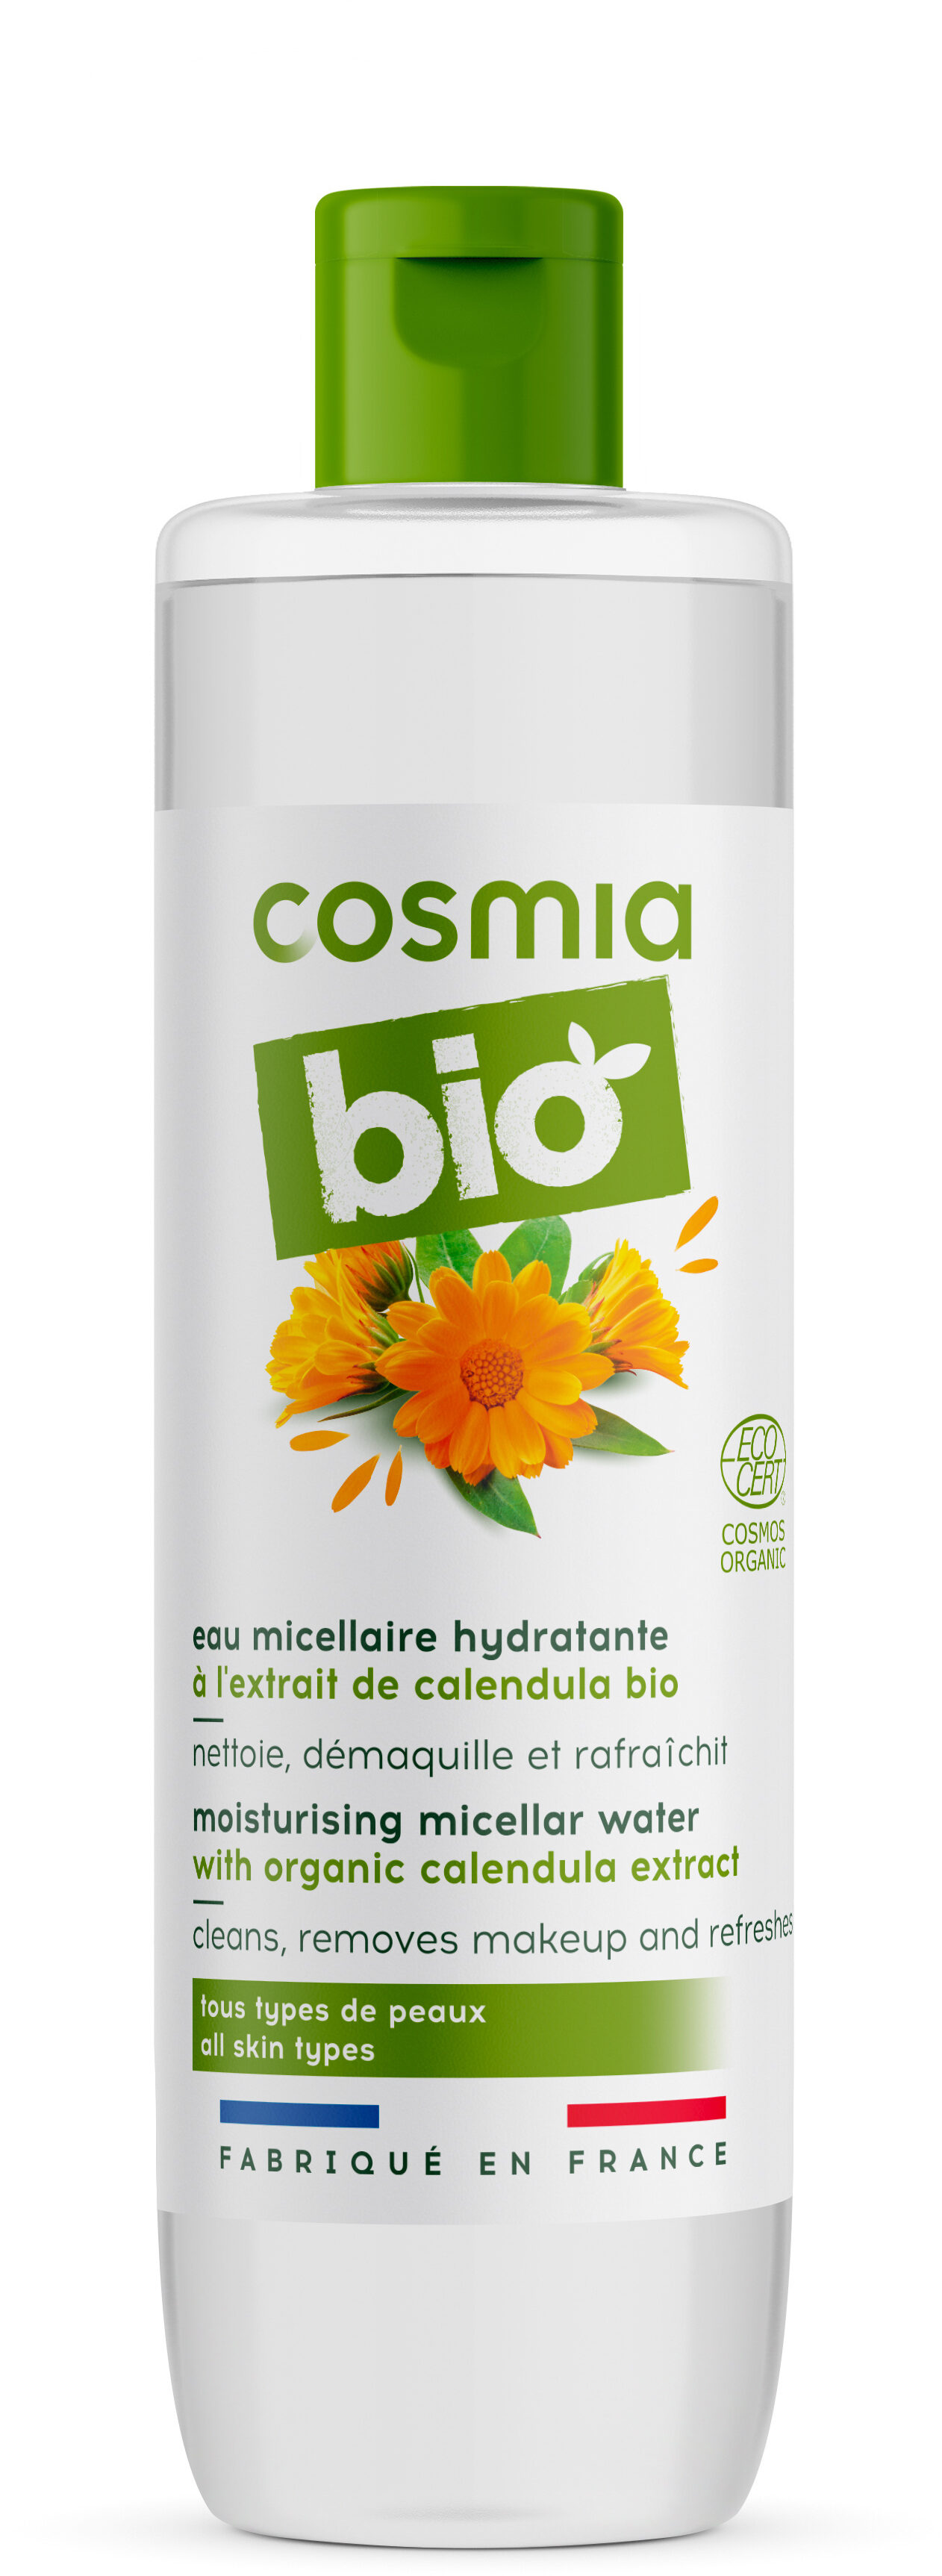 Cosmia cosmos bio - eau micellaire hydratante - à l'extrait de calendula bio - tous types de peaux - 250 ml - Product - fr